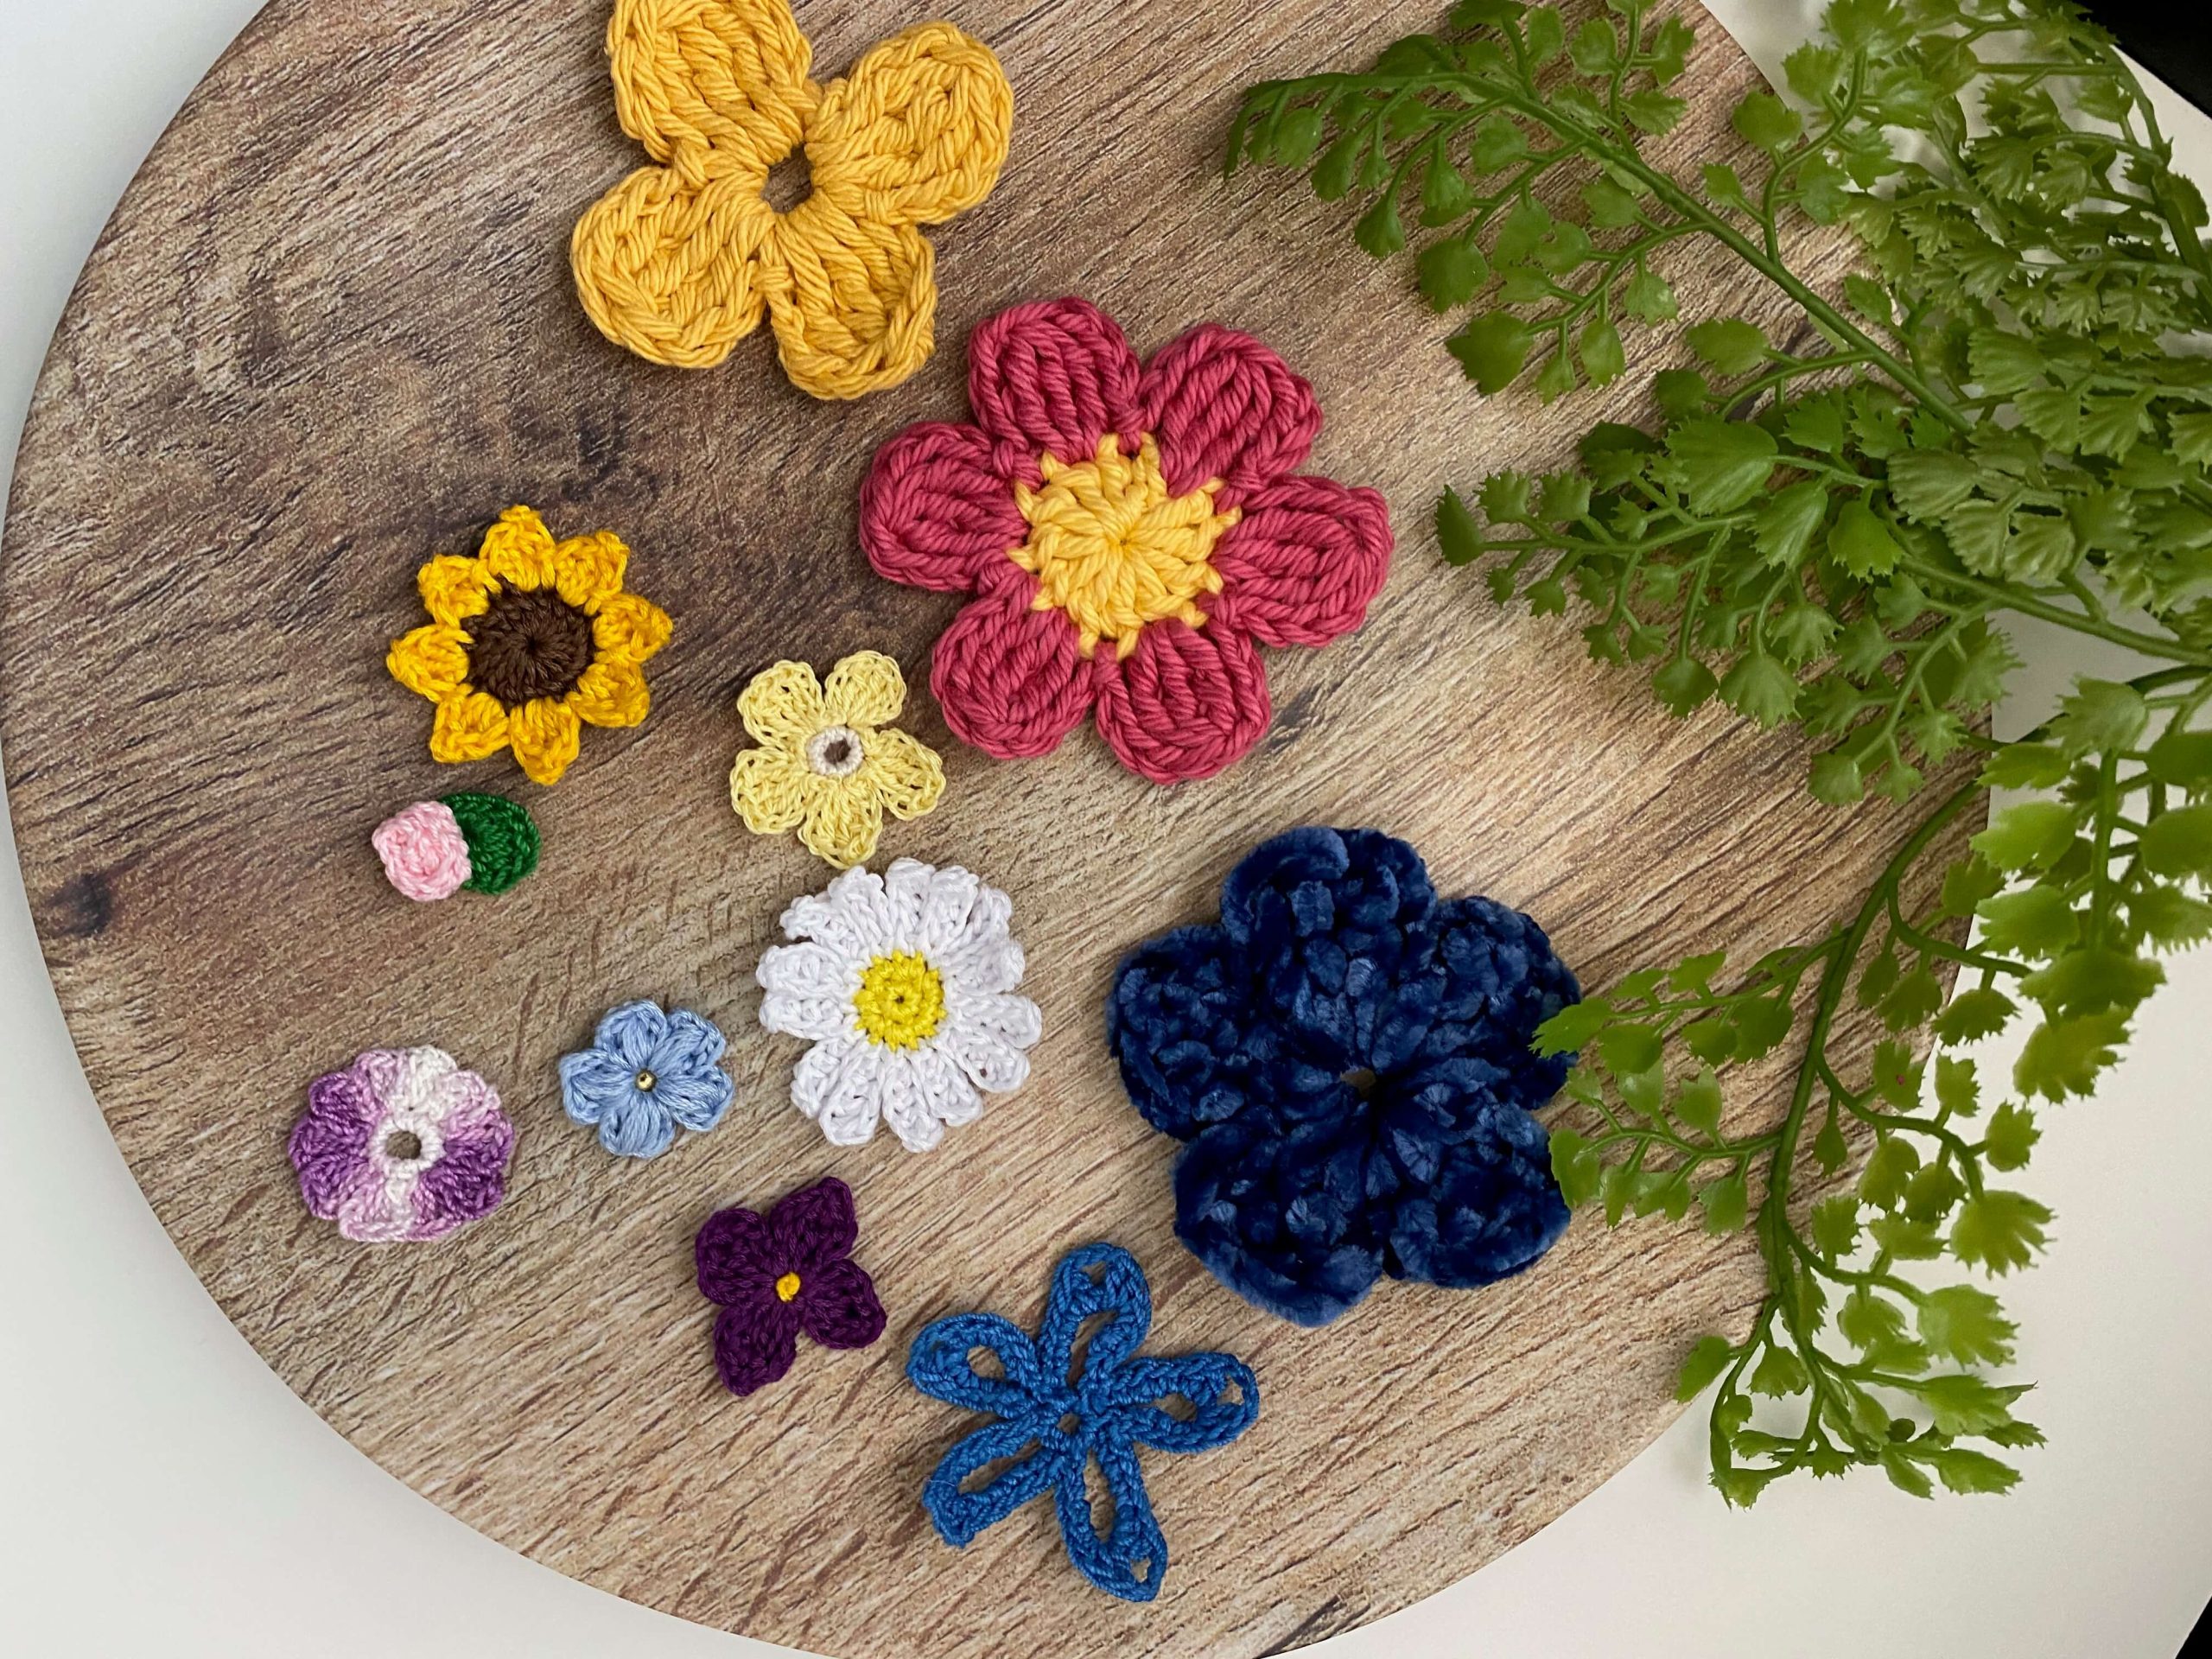 Floral Crochet Kitchen Set 